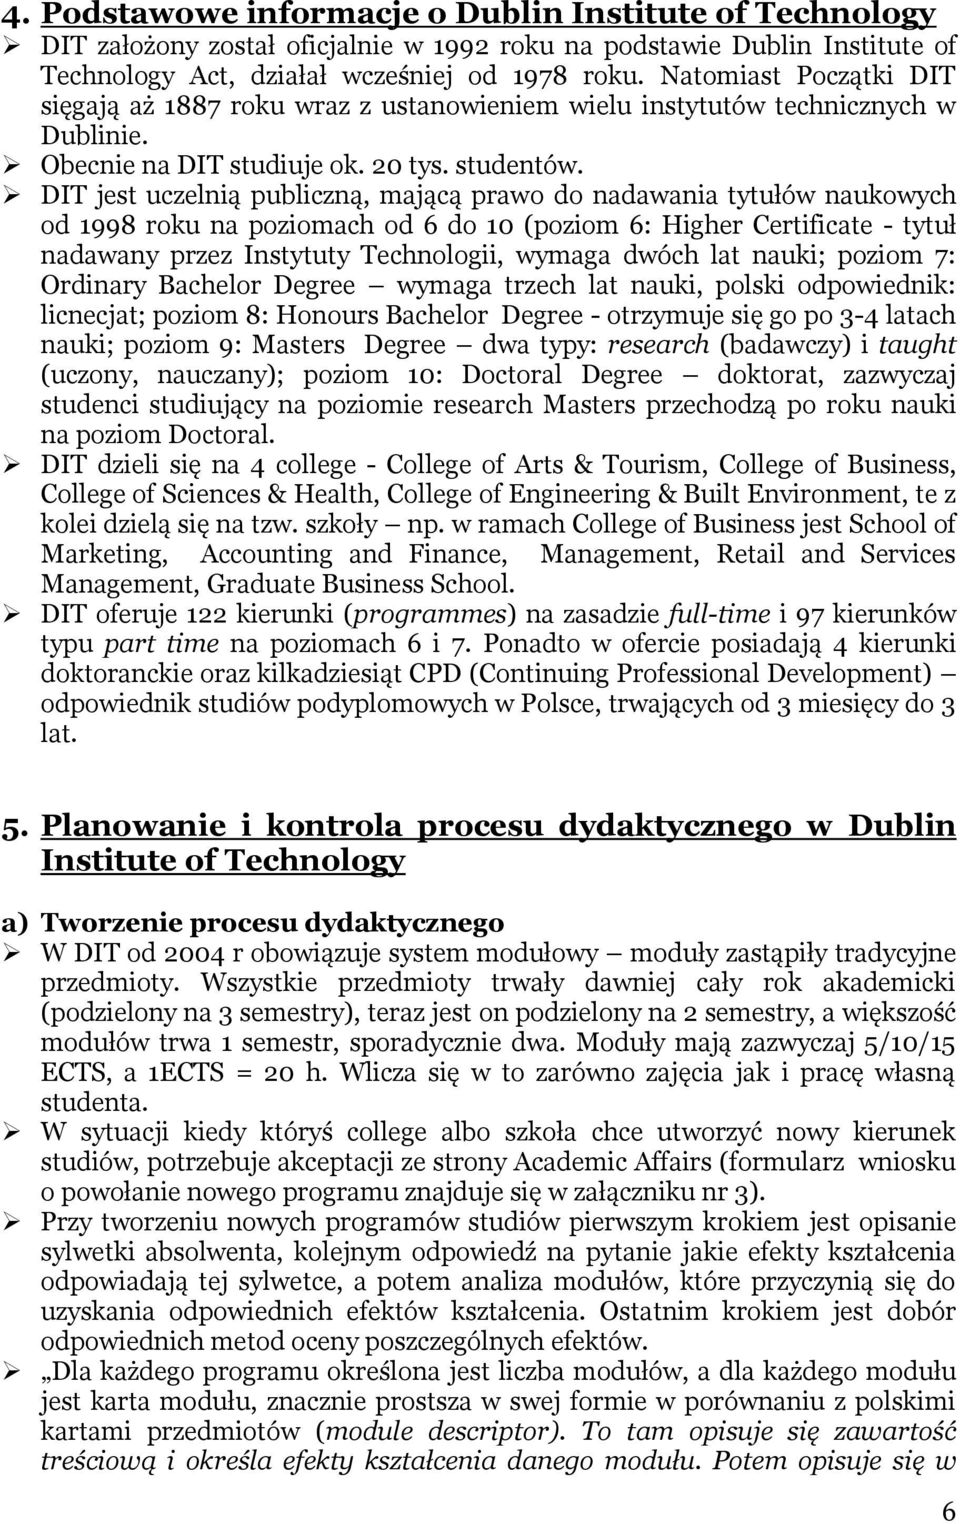 DIT jest uczelnią publiczną, mającą prawo do nadawania tytułów naukowych od 1998 roku na poziomach od 6 do 10 (poziom 6: Higher Certificate - tytuł nadawany przez Instytuty Technologii, wymaga dwóch